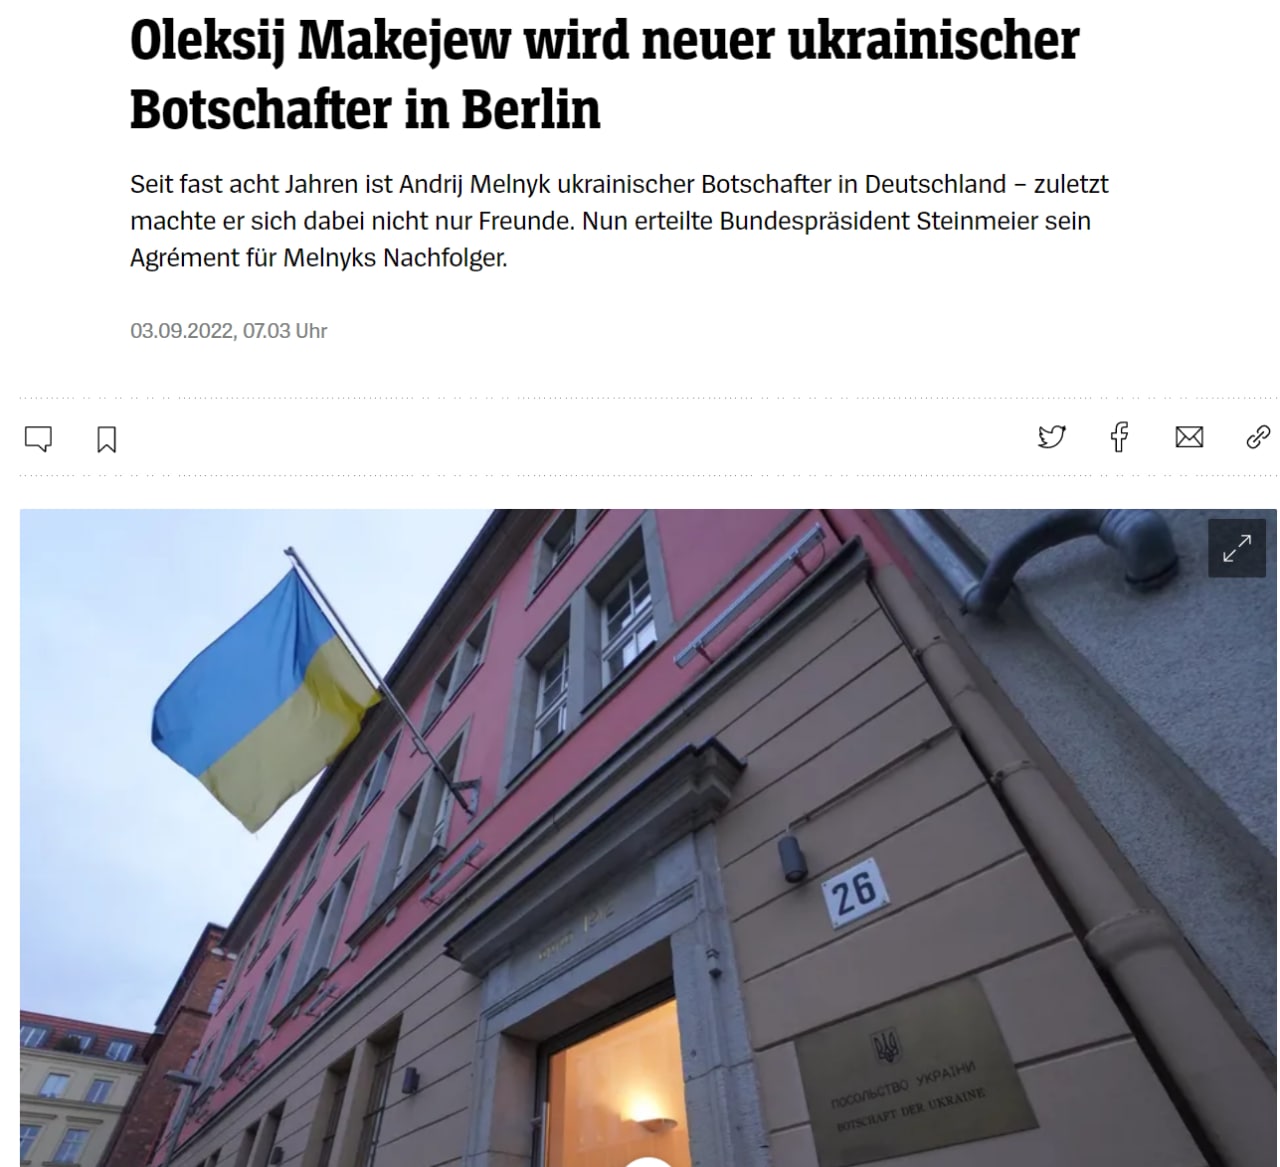 Берлин утвердил кандидатуру нового посла Украины в Германии - Алексея Макеева, - пишет издание Spiegel